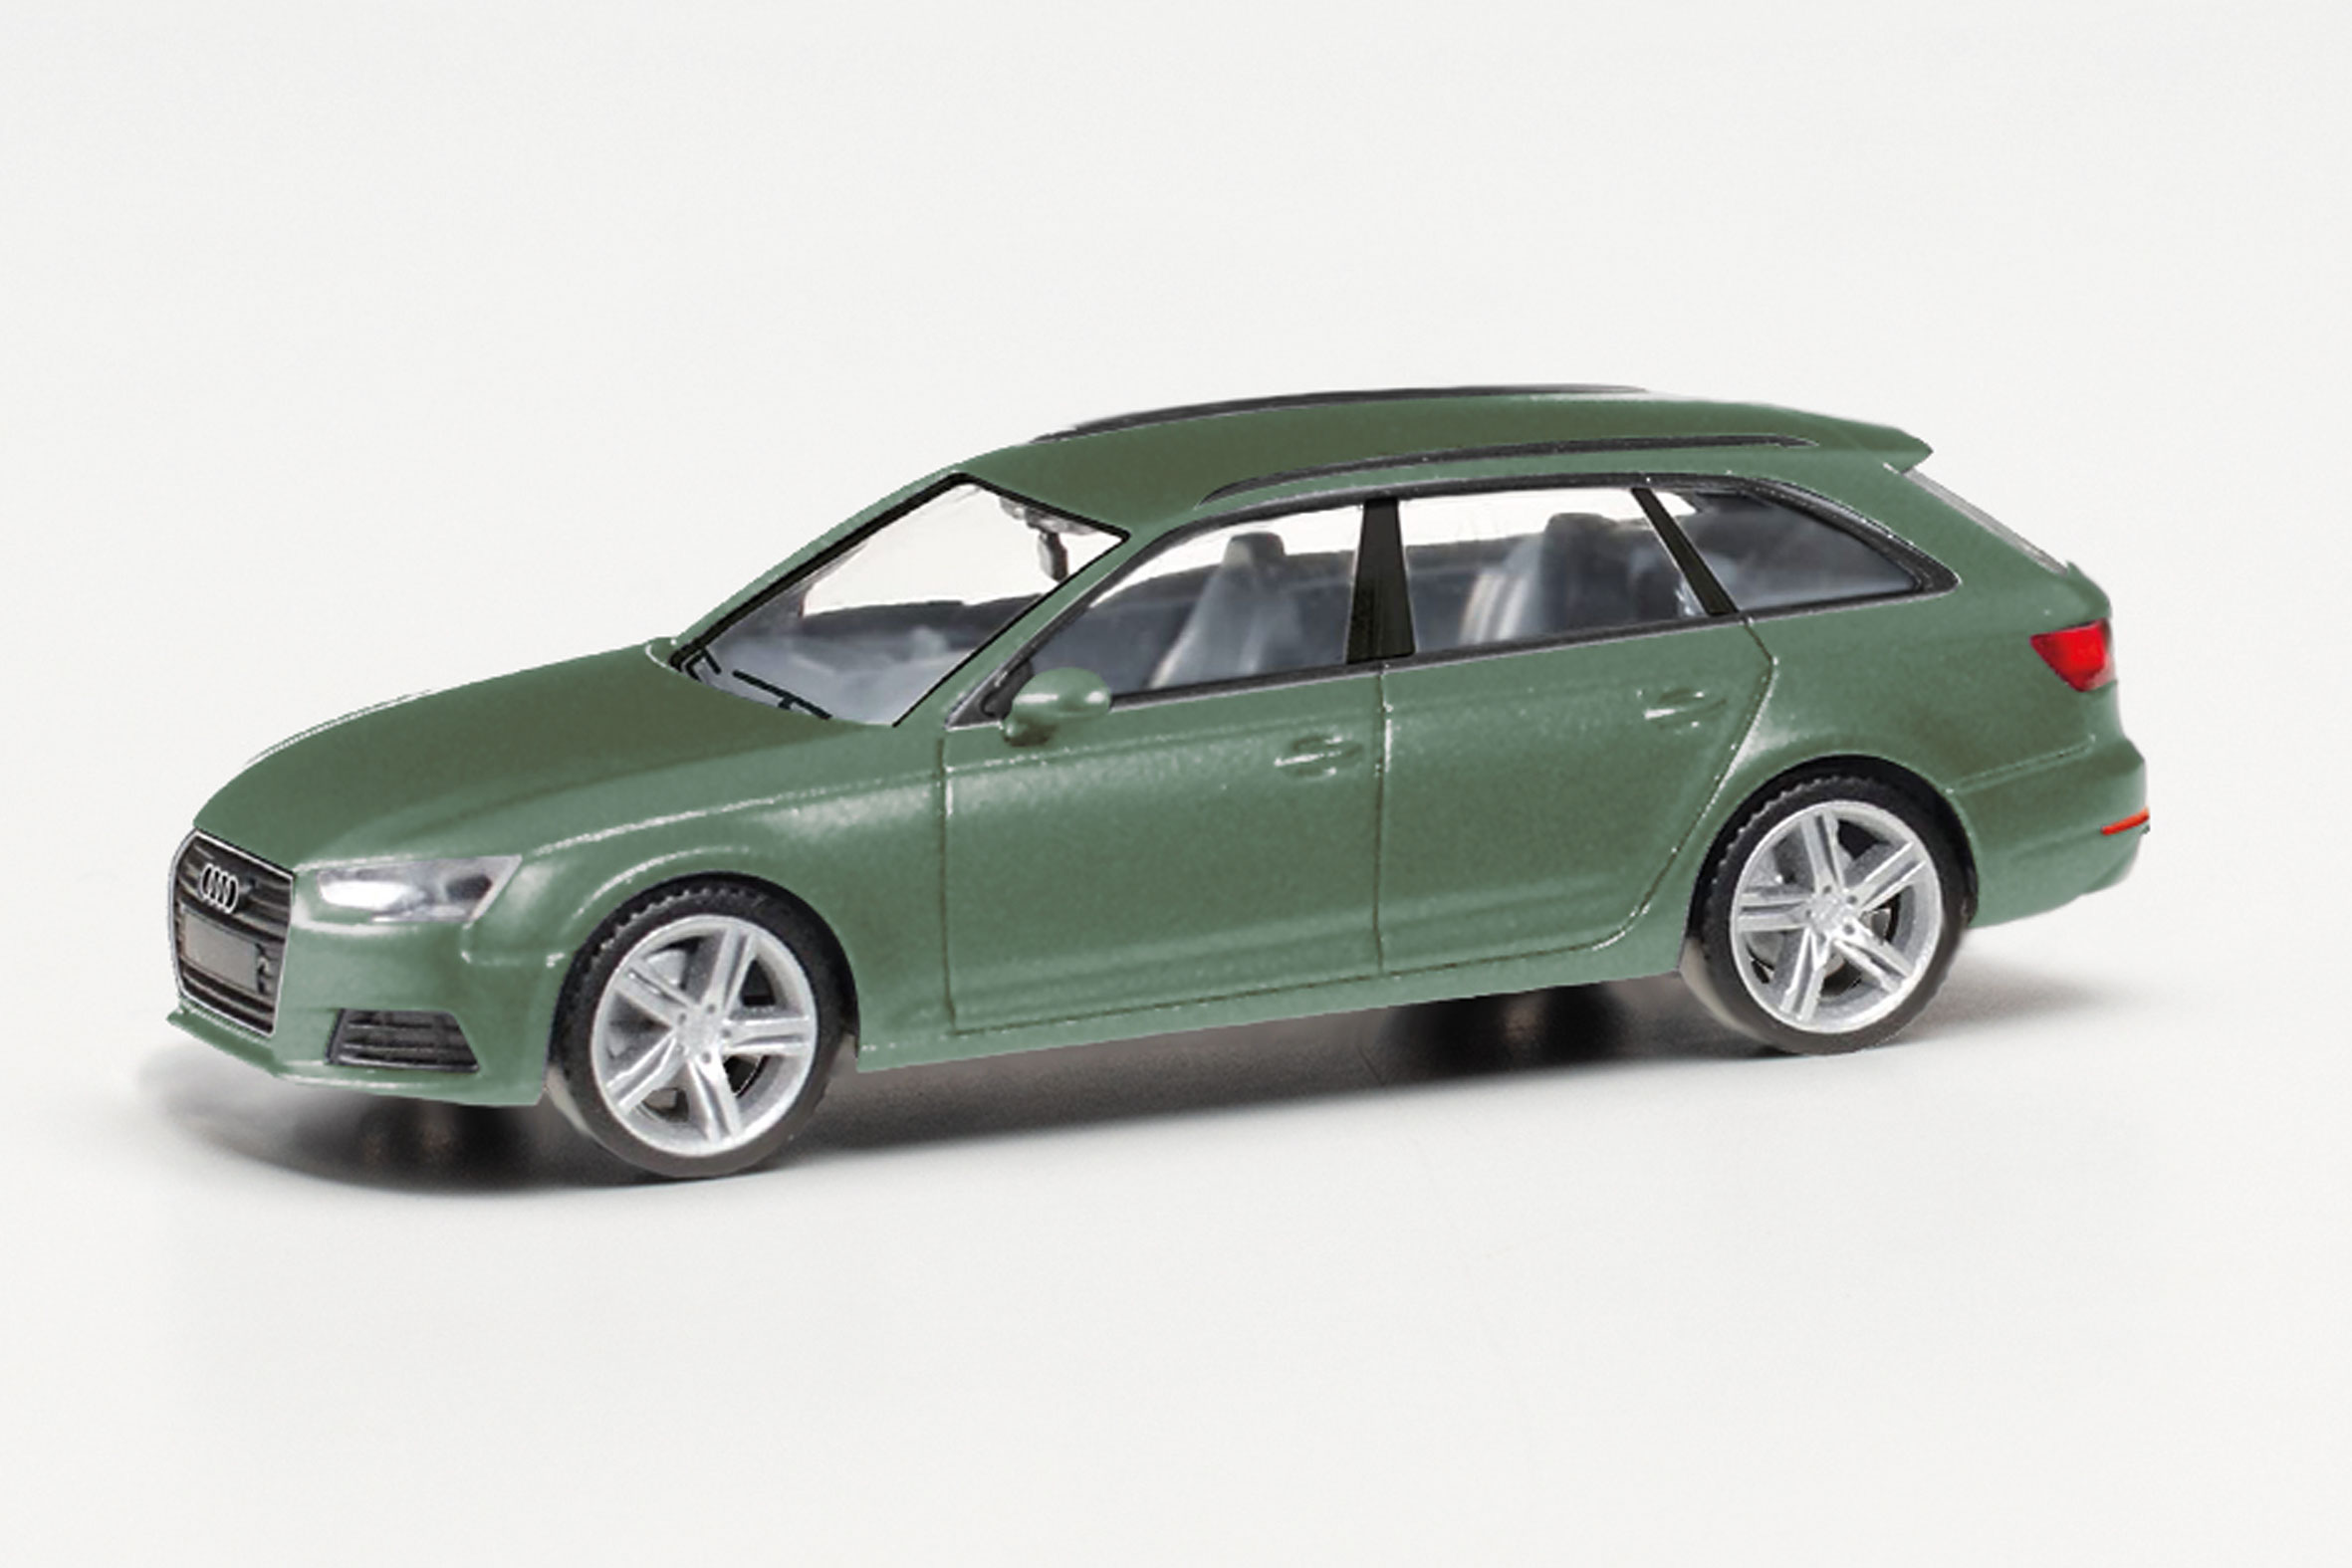 Audi A4 Avant, distriktgrün m